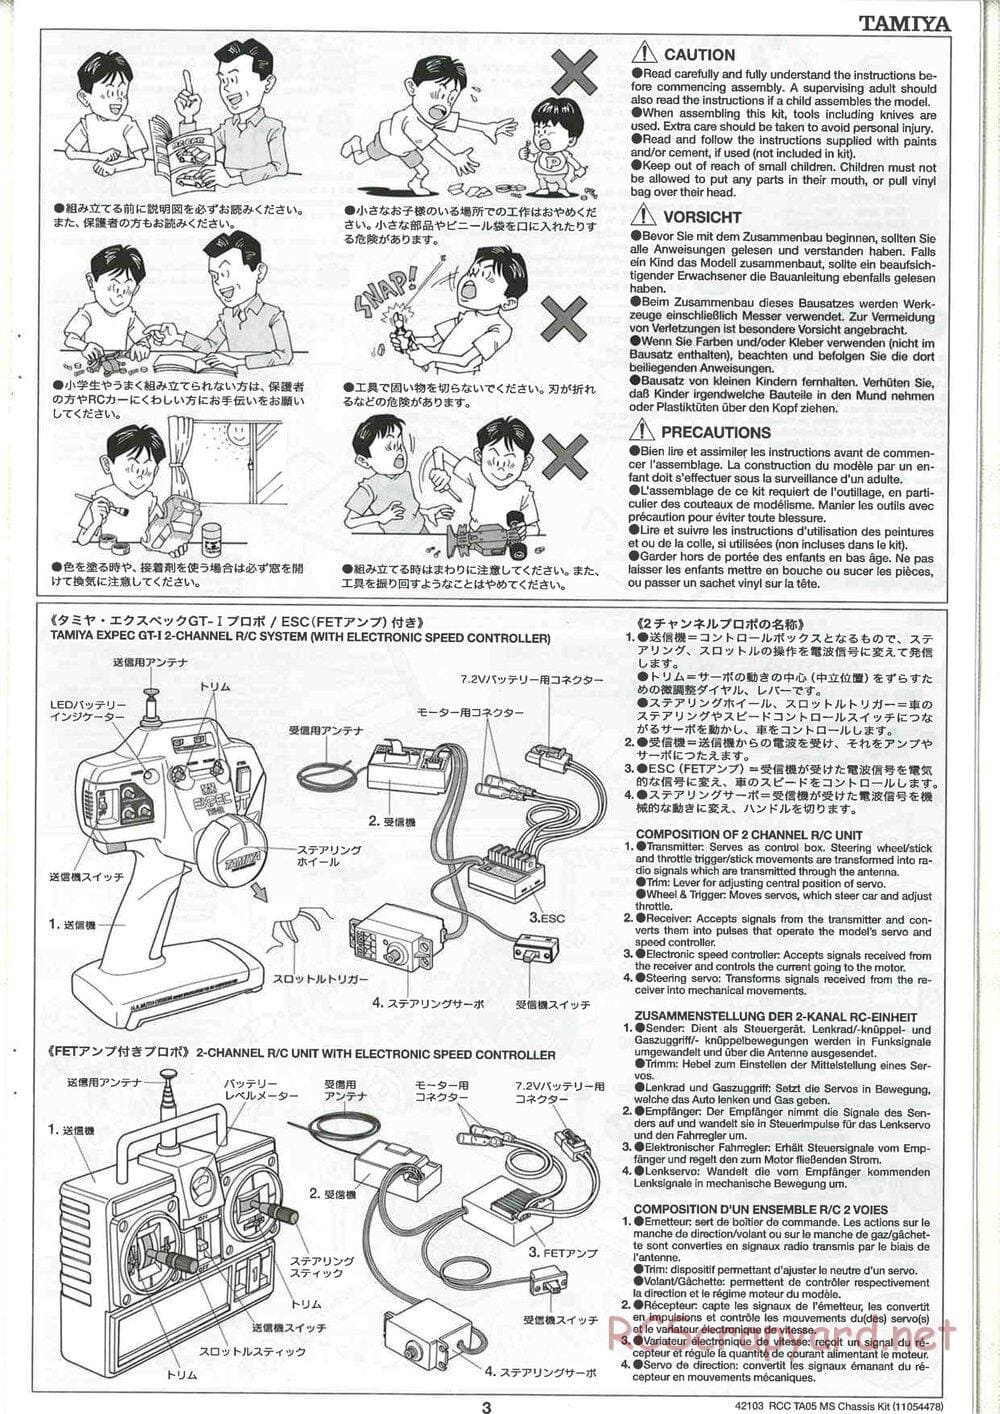 Tamiya - TA05 MS Chassis - Manual - Page 3